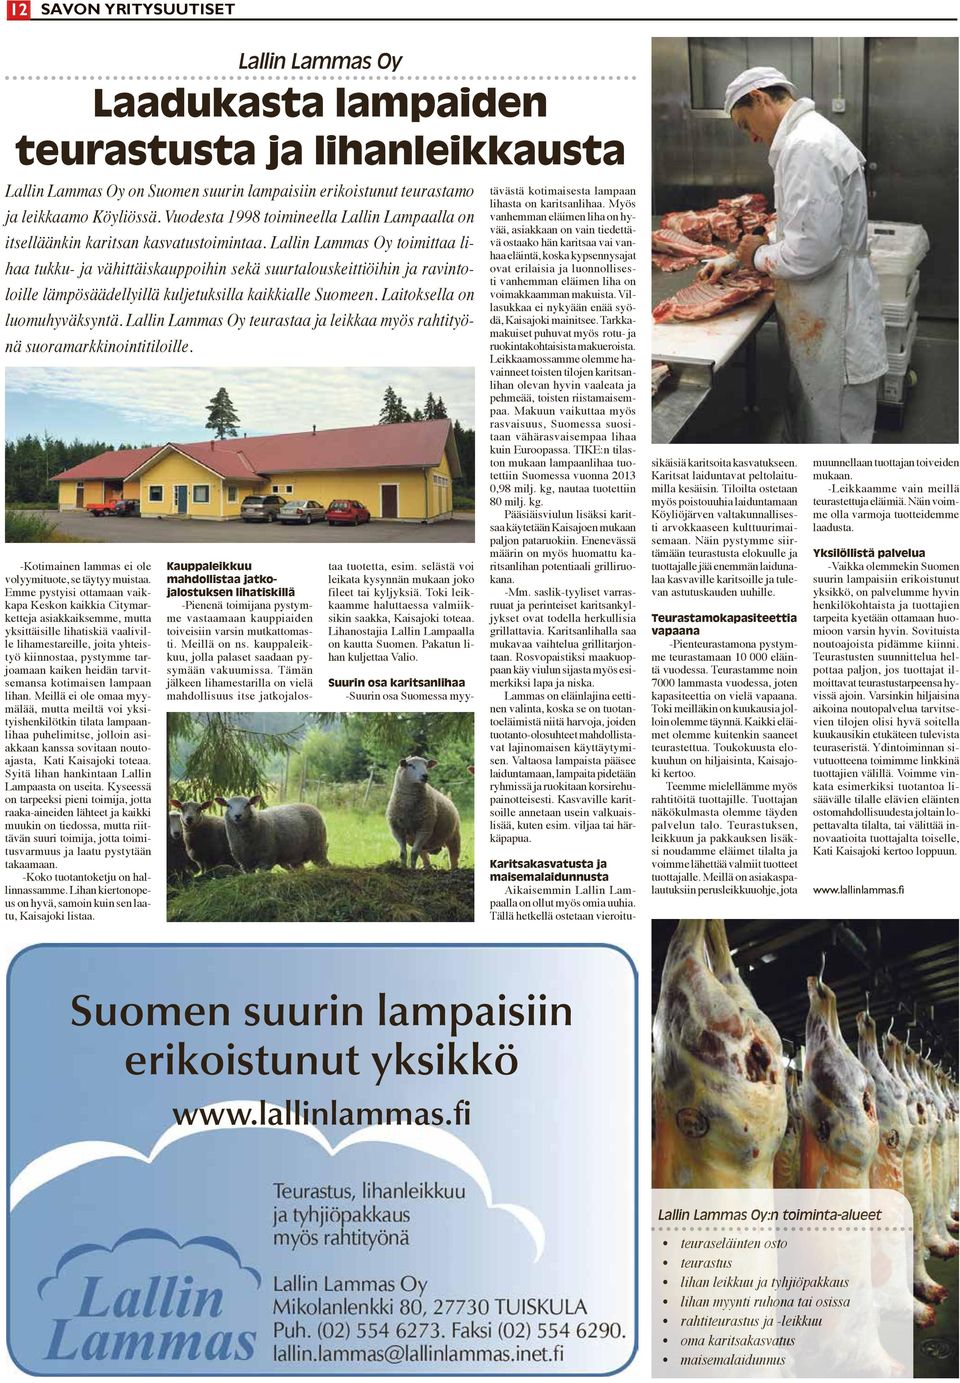 Lallin Lammas Oy toimittaa lihaa tukku- ja vähittäiskauppoihin sekä suurtalouskeittiöihin ja ravintoloille lämpösäädellyillä kuljetuksilla kaikkialle Suomeen. Laitoksella on luomuhyväksyntä.